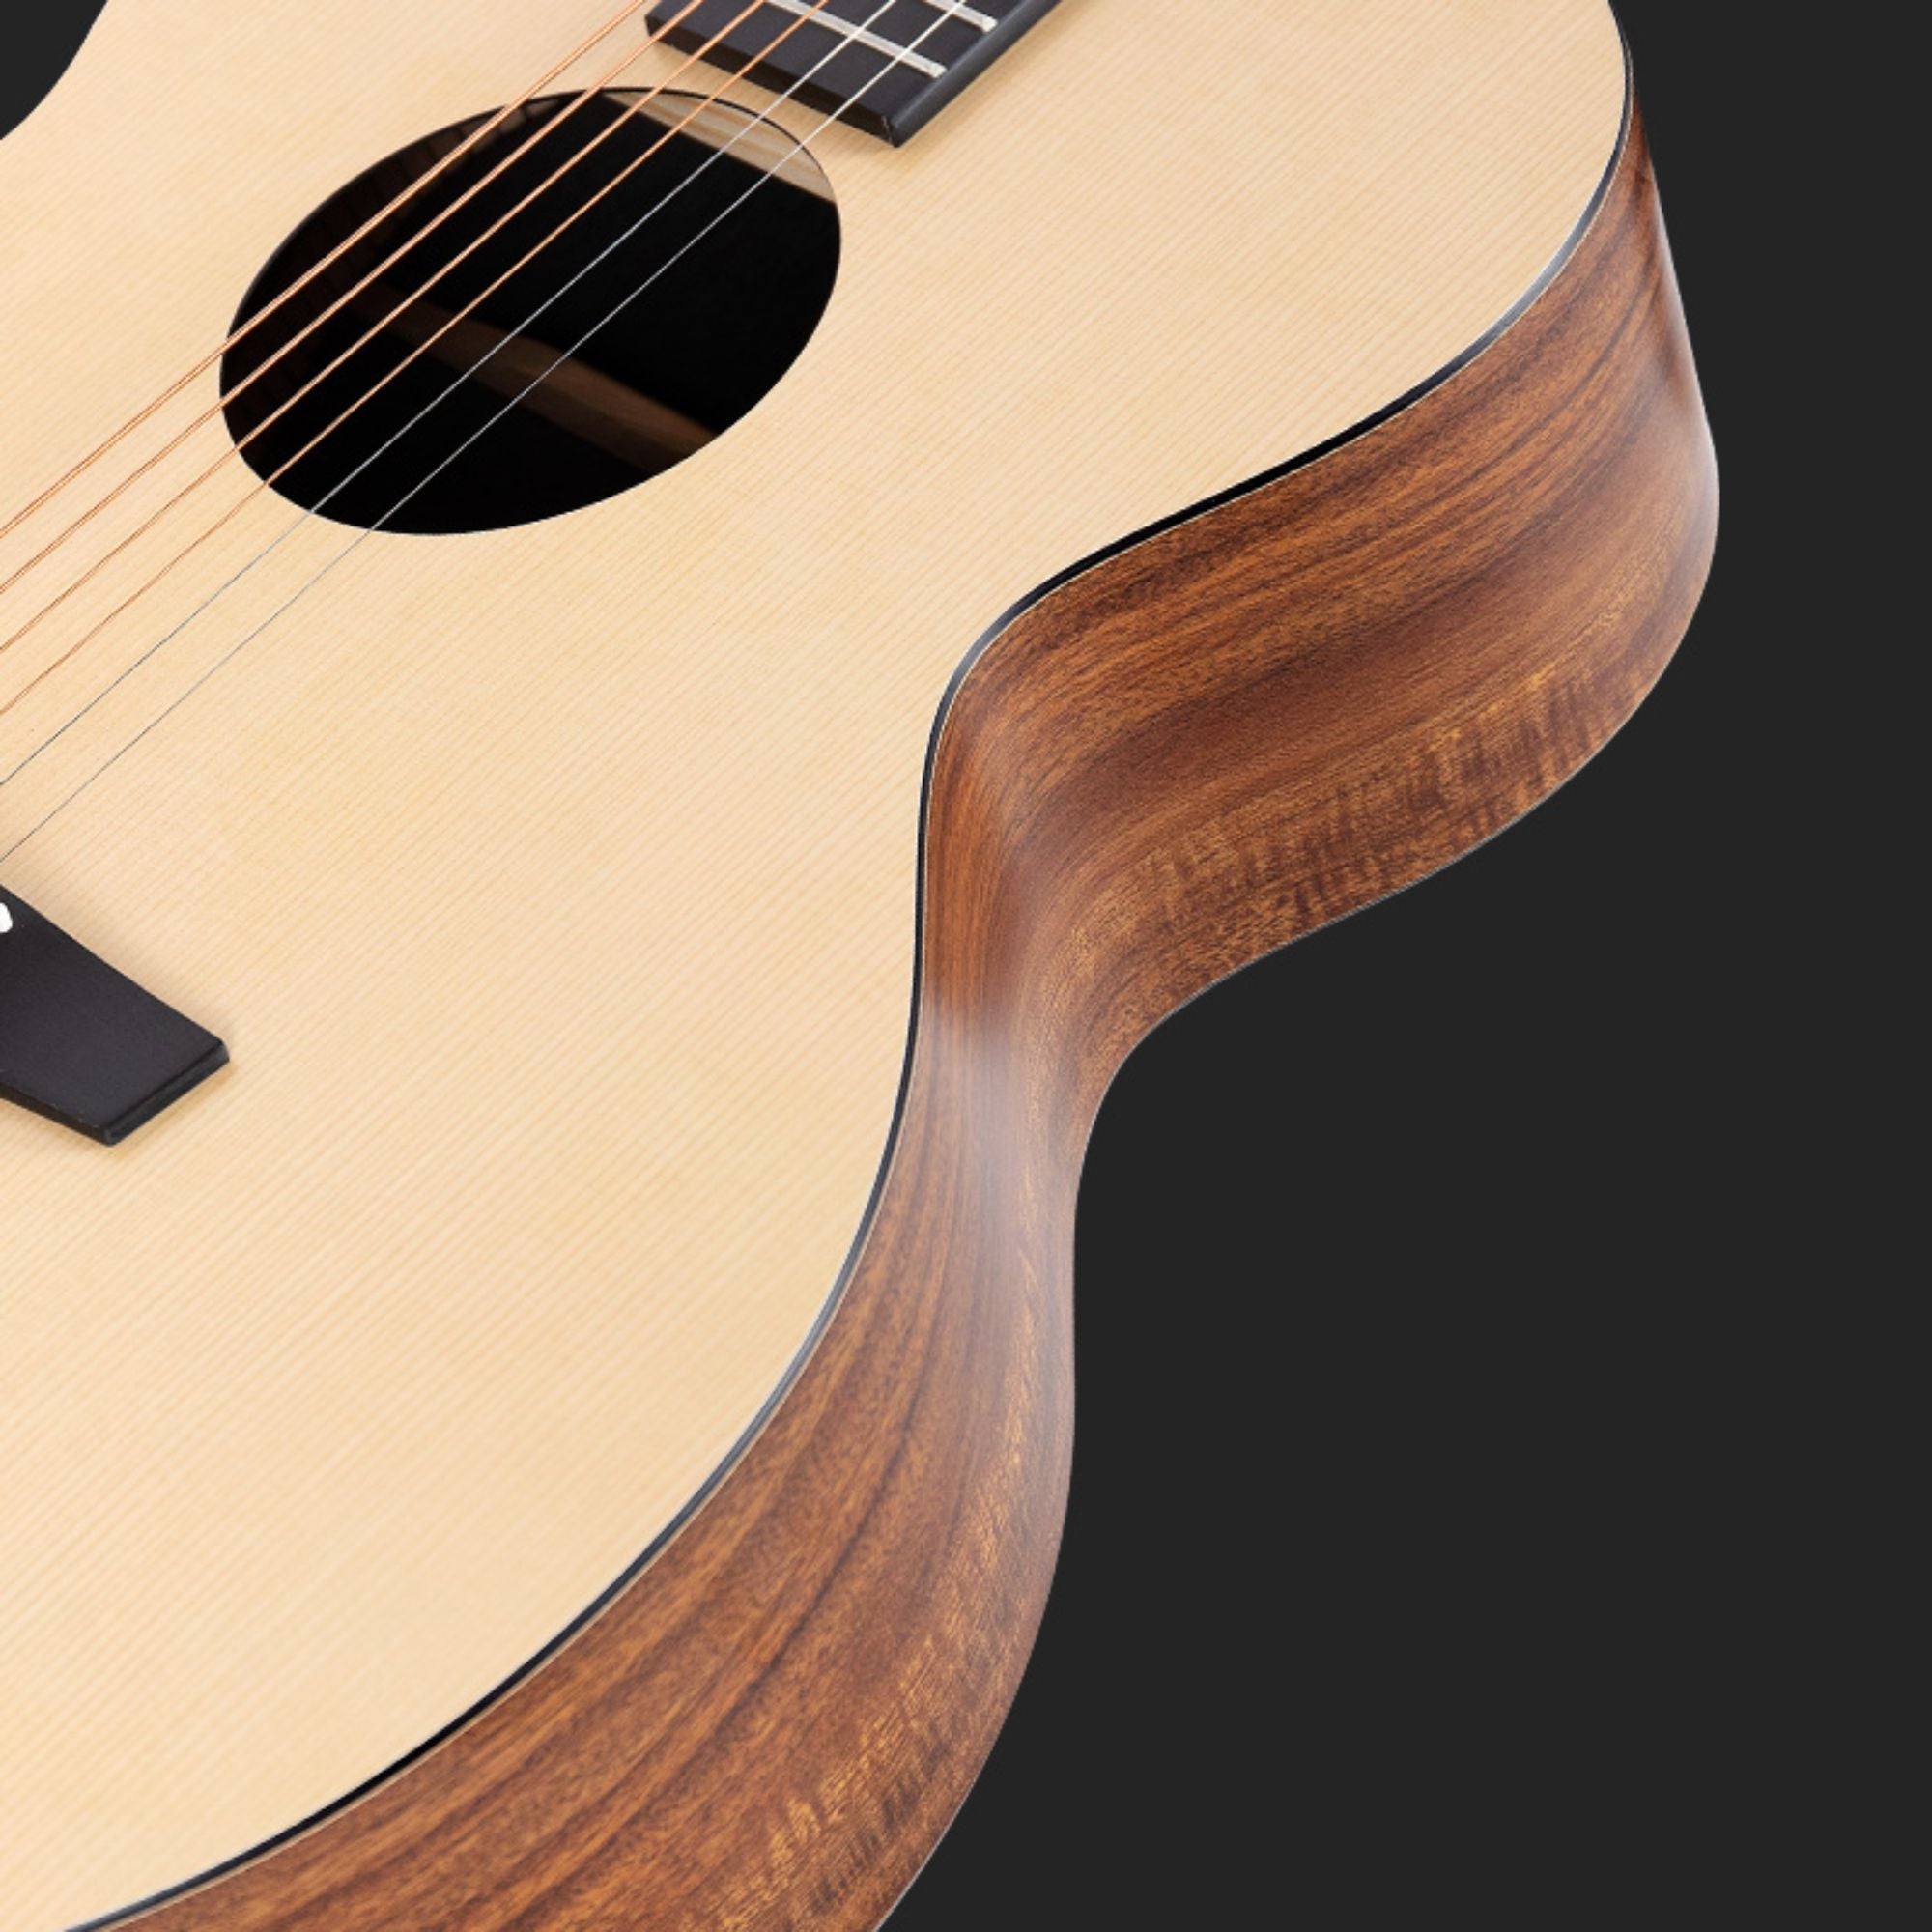 Đàn Guitar Acoustic Enya EA-X0